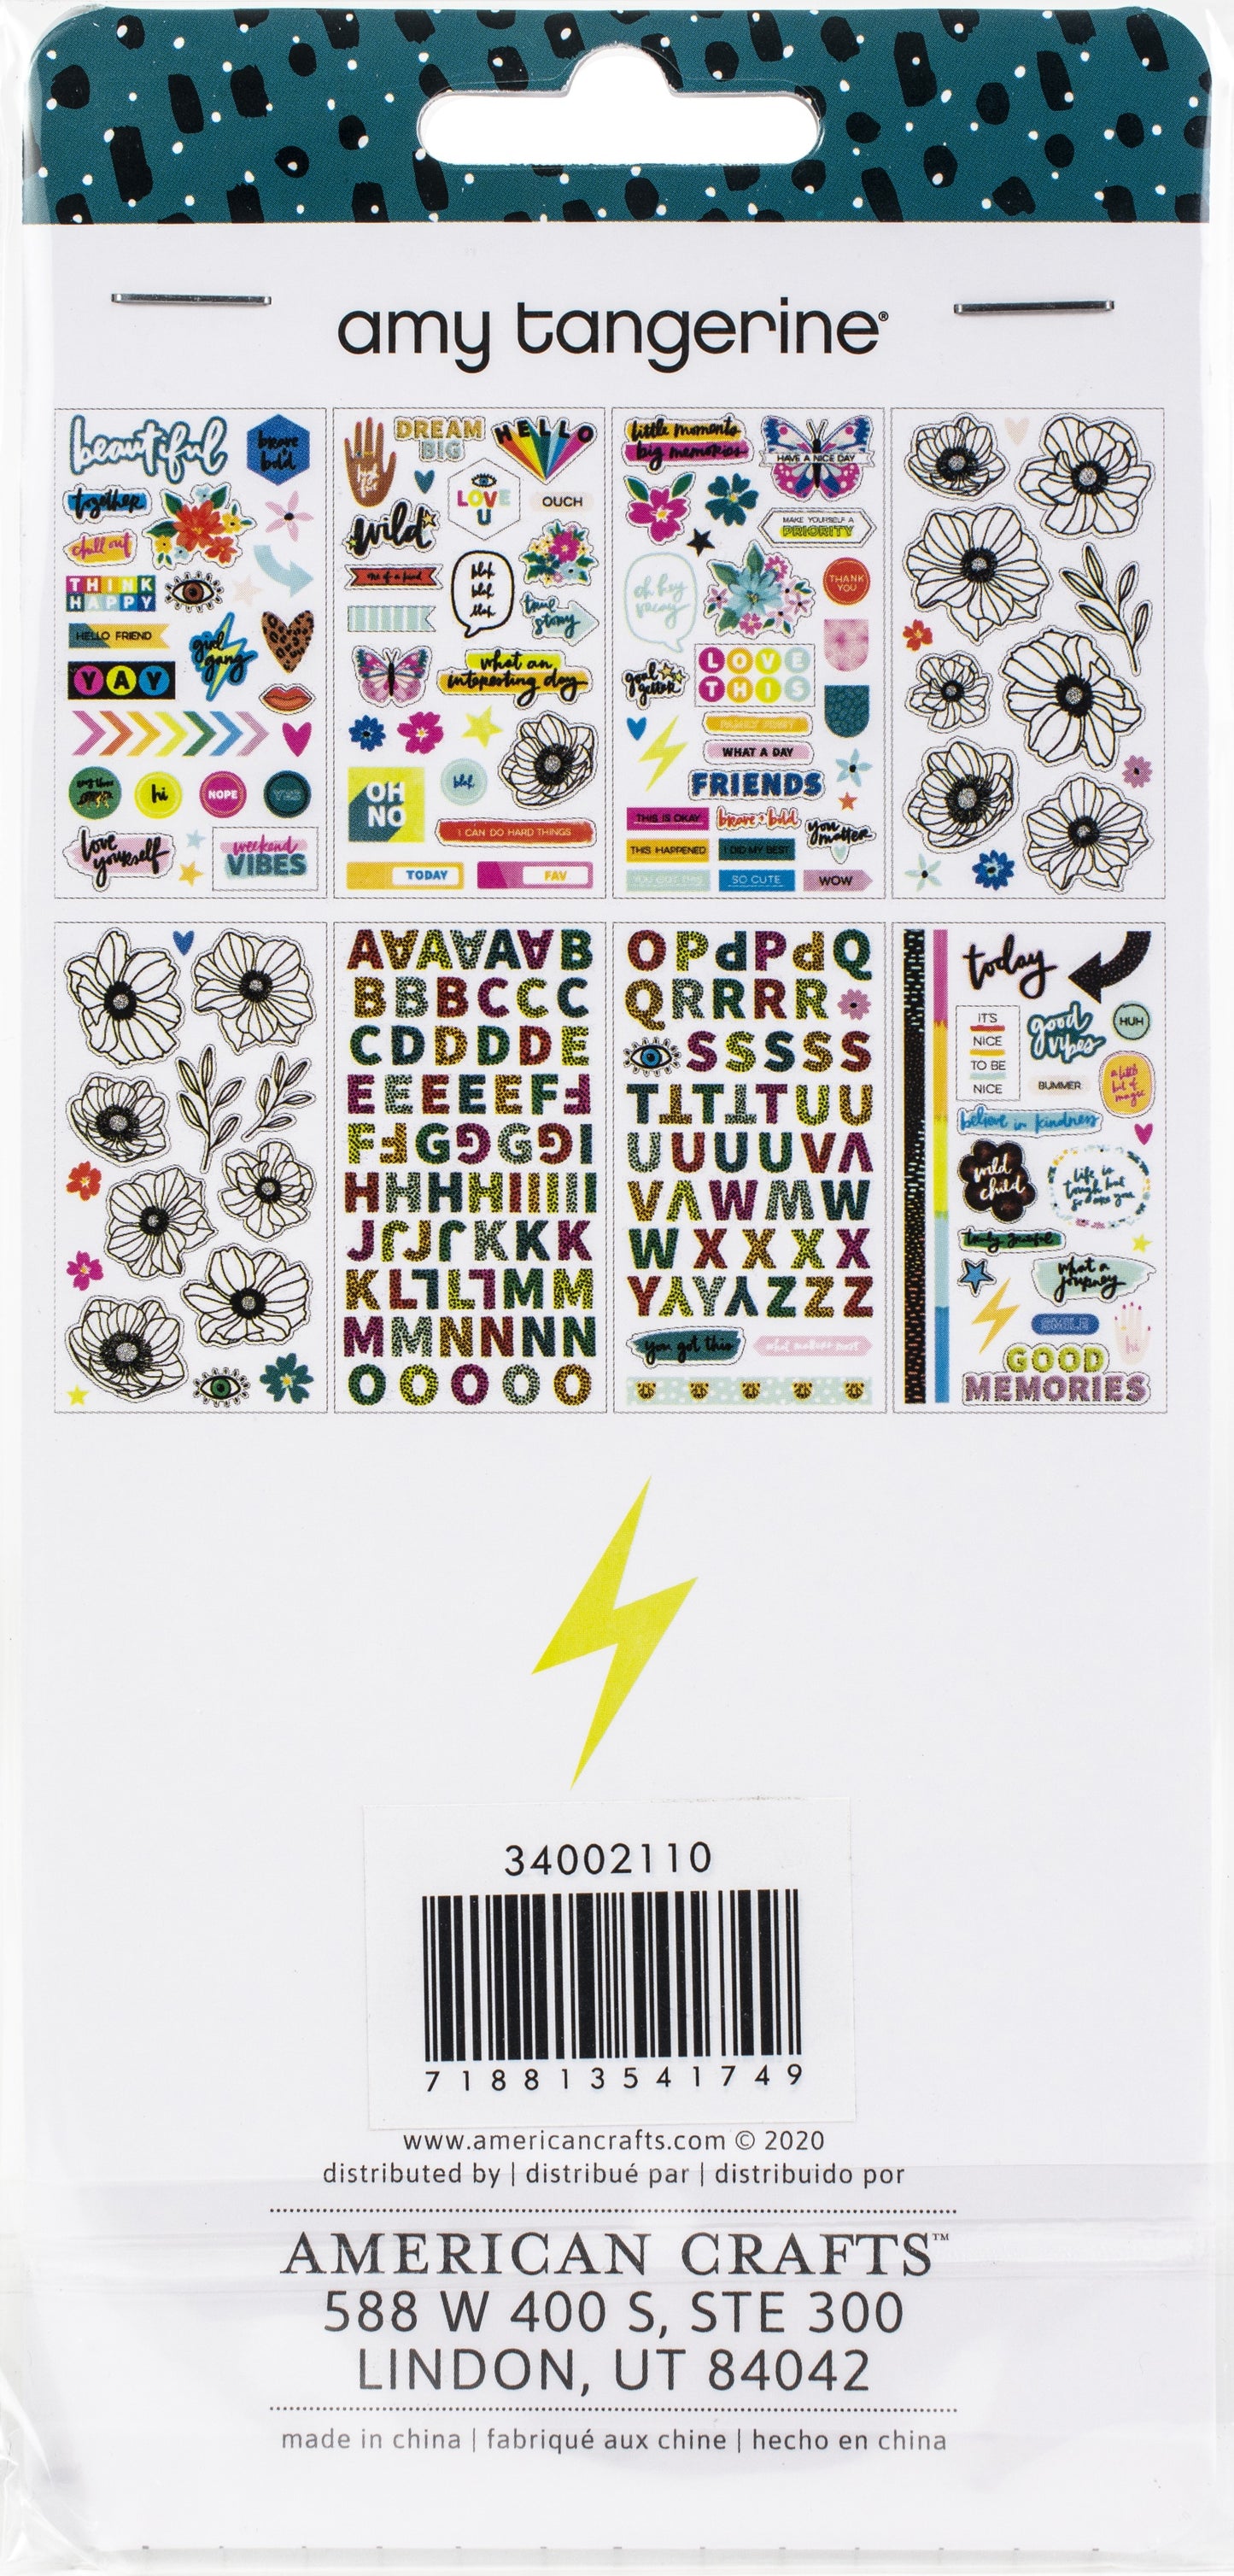 Amy Tan Brave & Bold Mini Sticker Book-Icon & Phrase